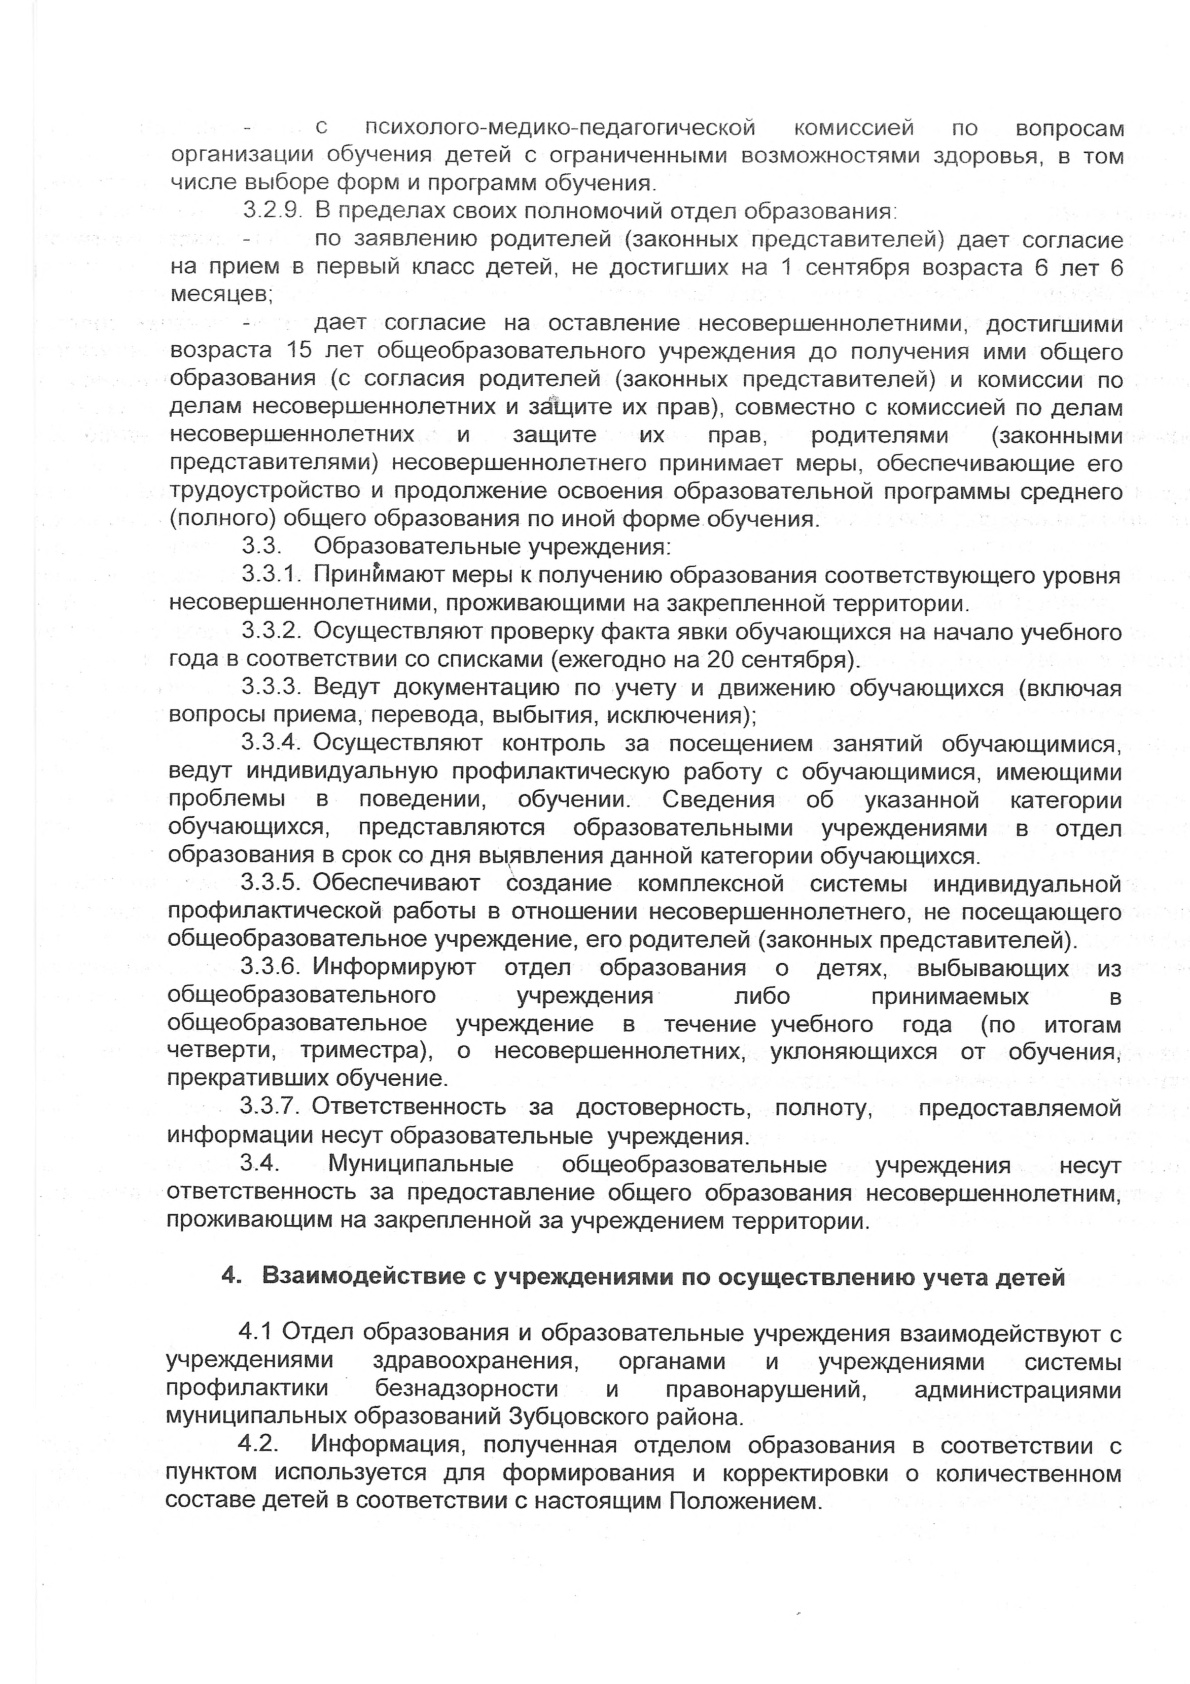 Постановление 22 от 22.10.2019 об организации учета детей 4